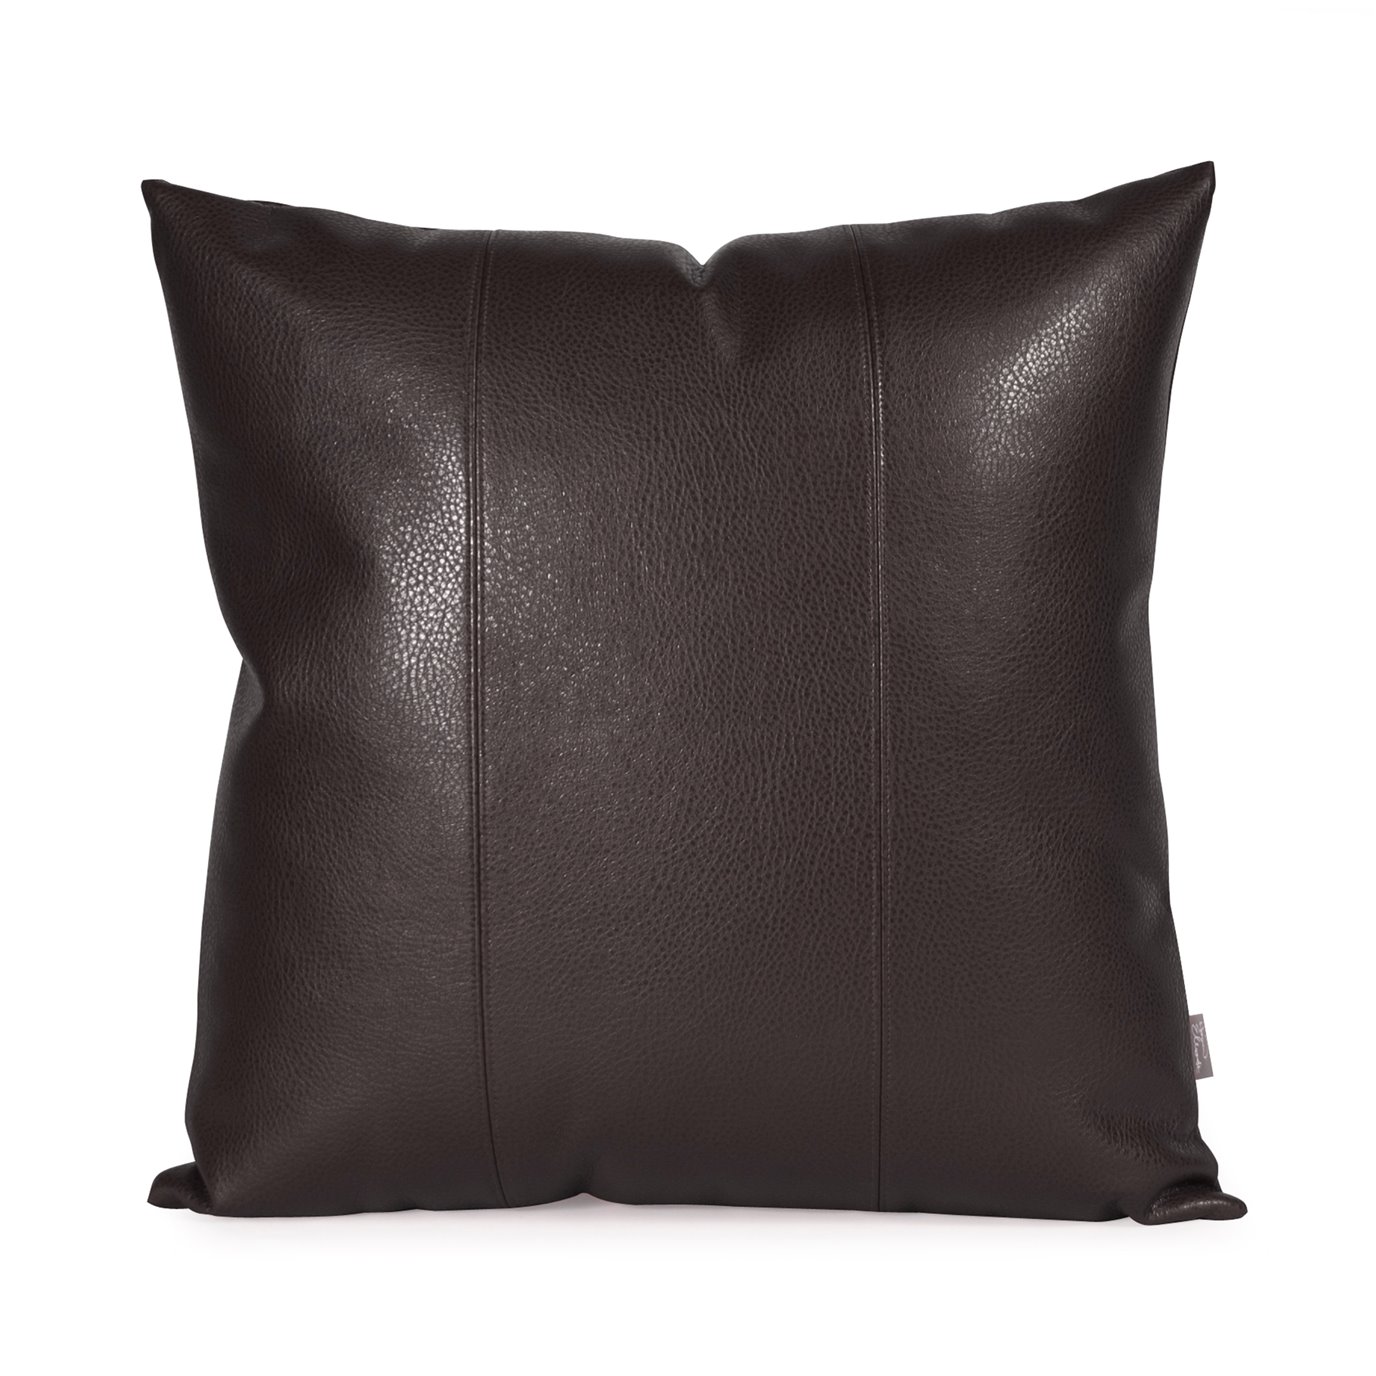 Howard Elliott 20" x 20" Pillow Faux Leather Avanti Black